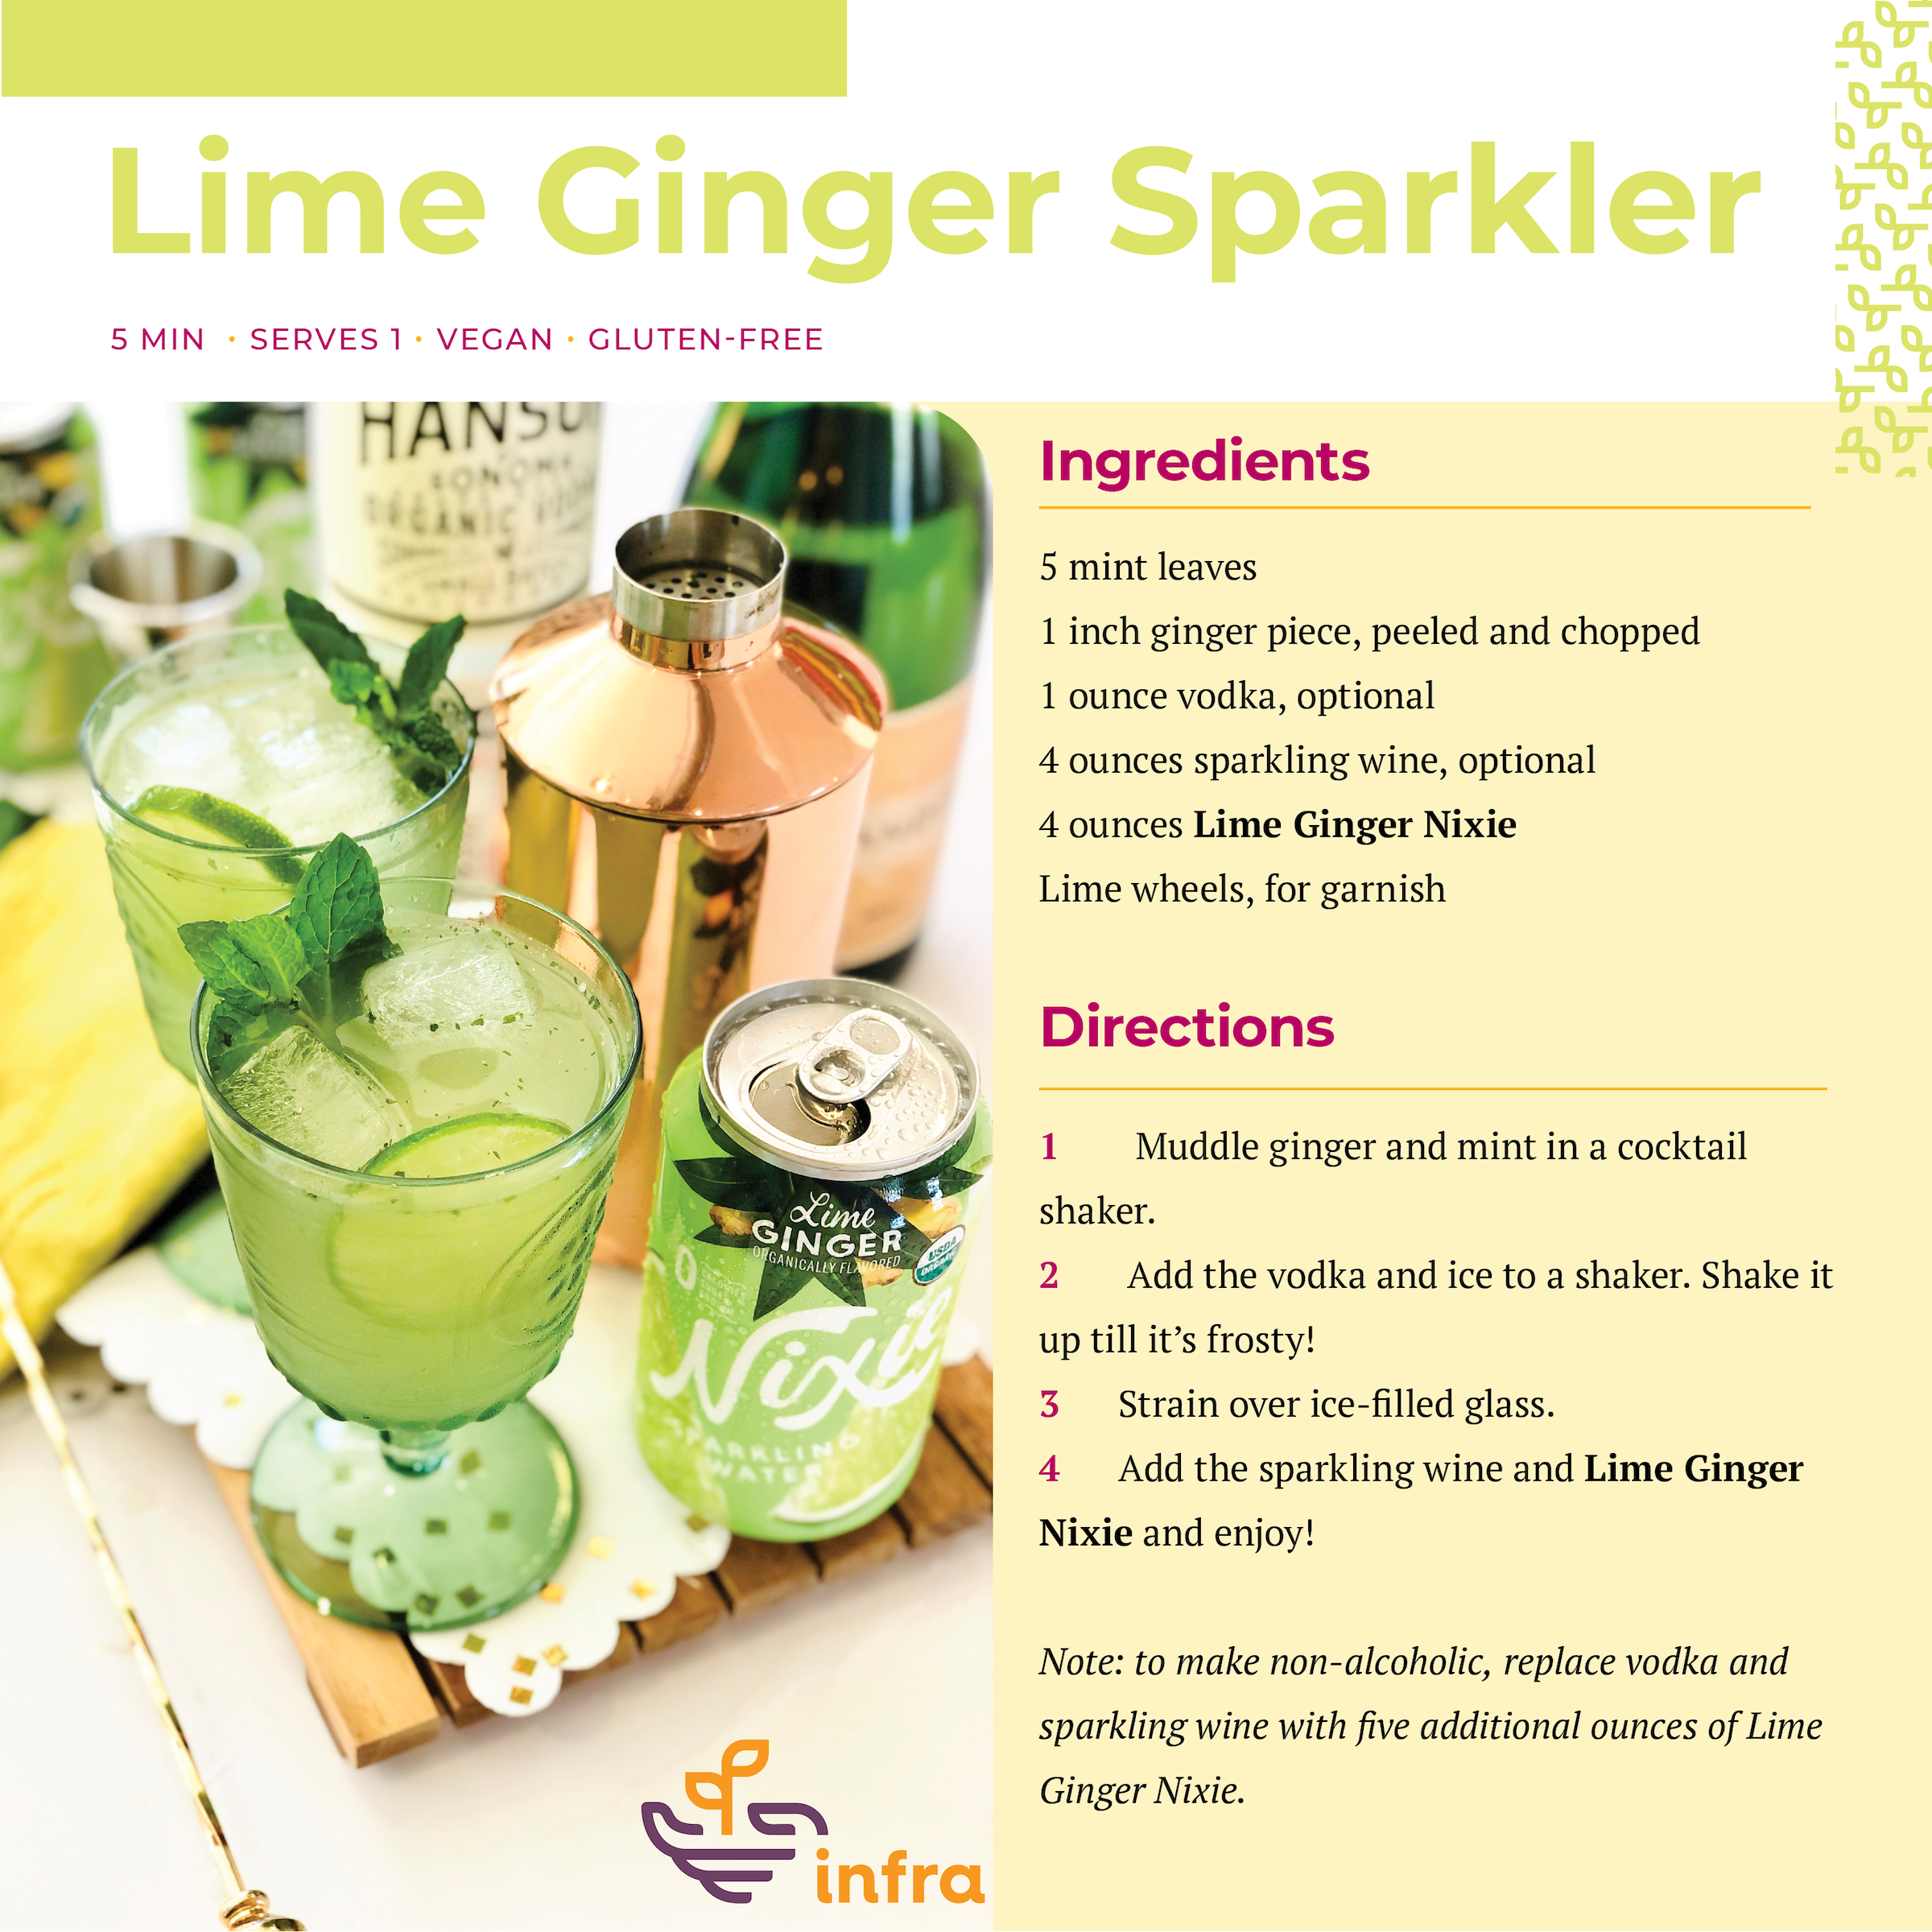 Lime Ginger Sparkler